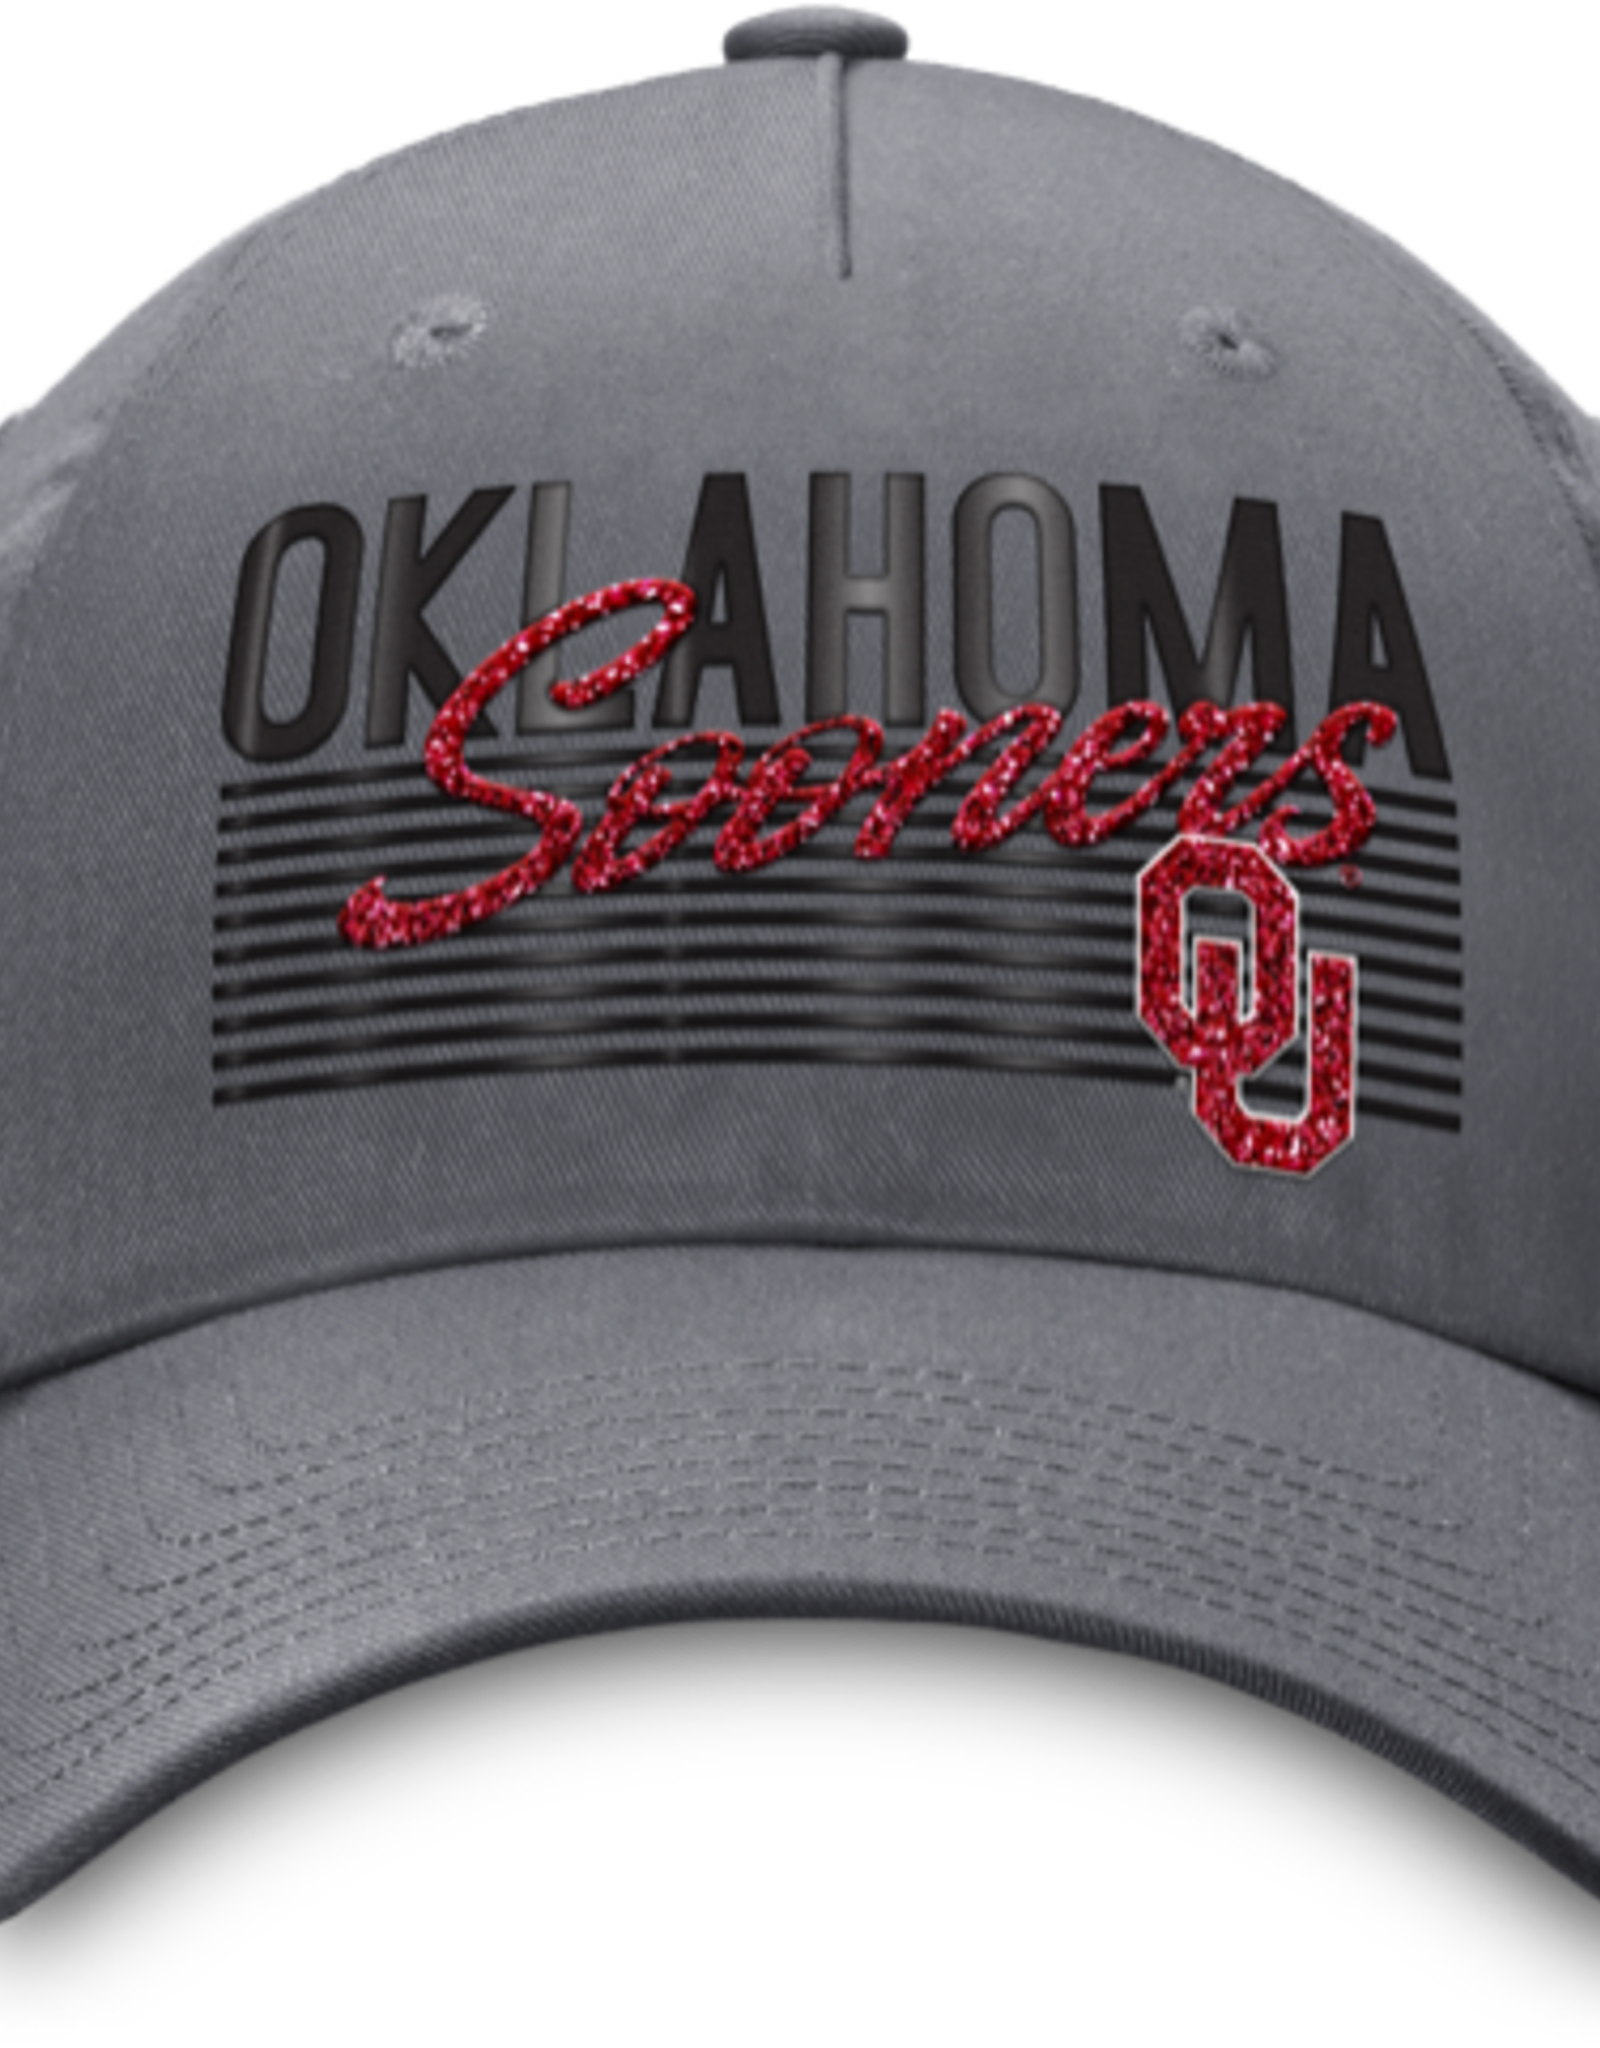 TOW Womens Tow Oklahoma Harmony Hat